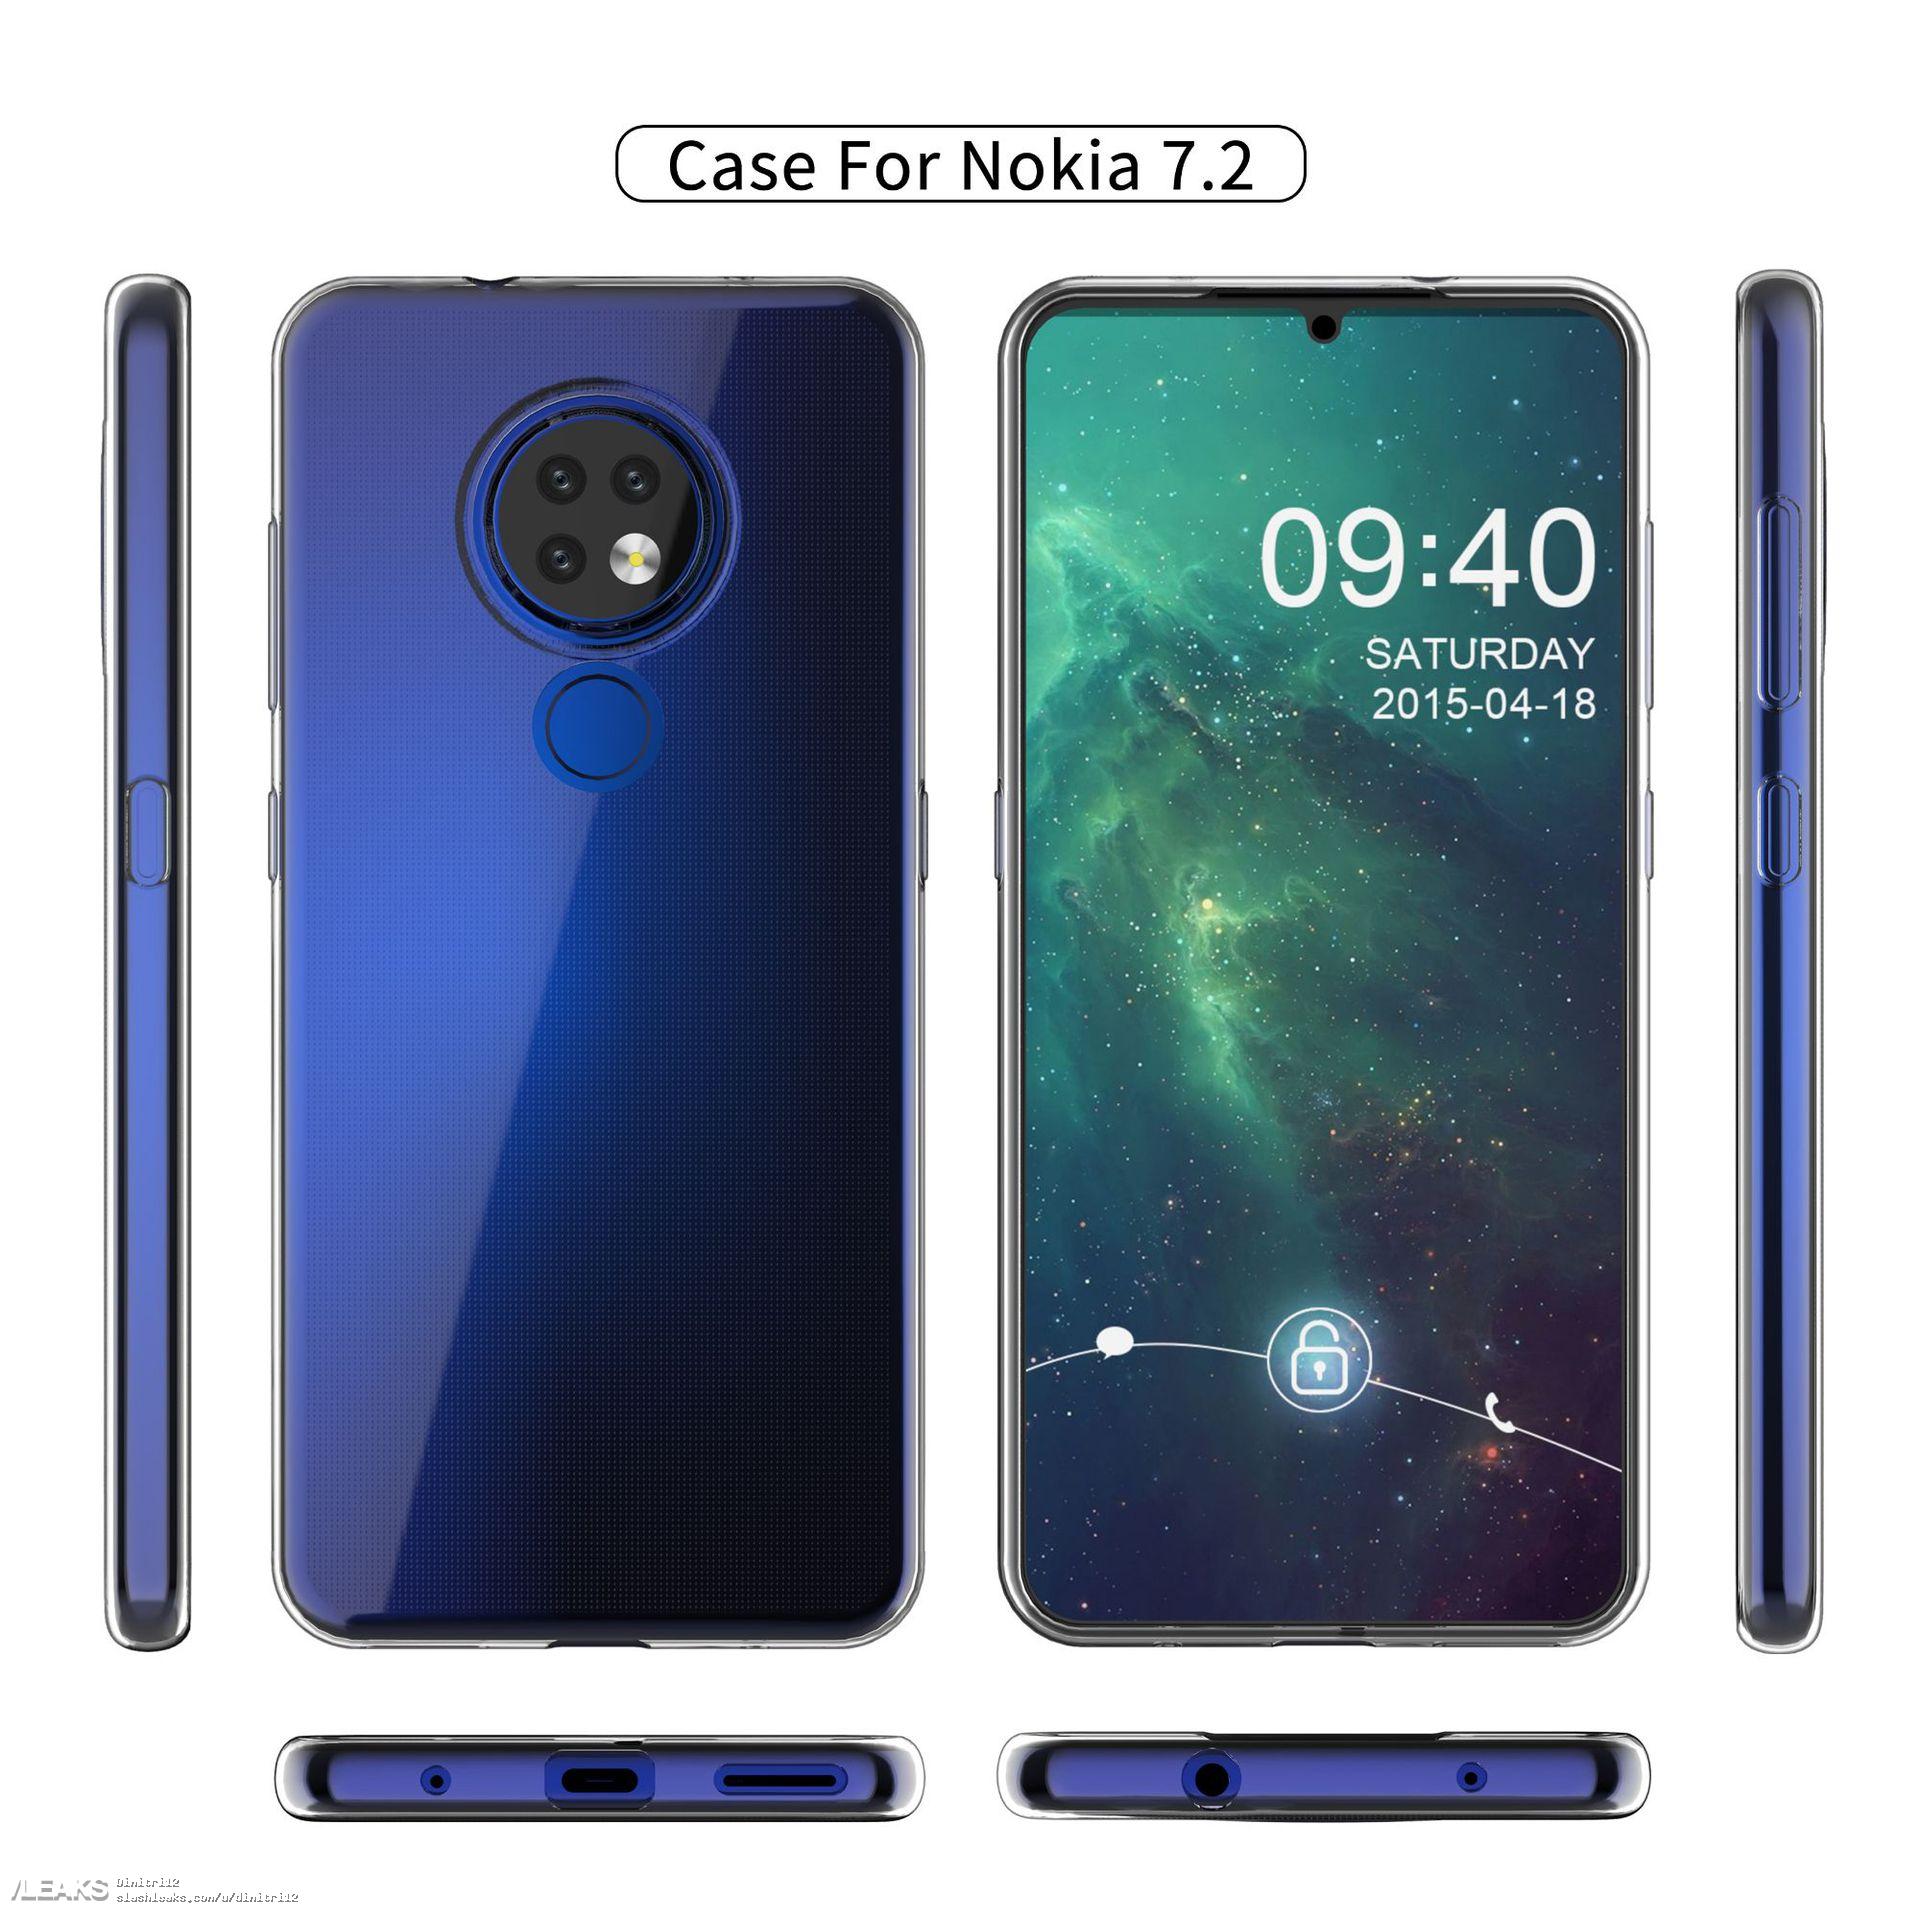 Nokia 7.2 case render